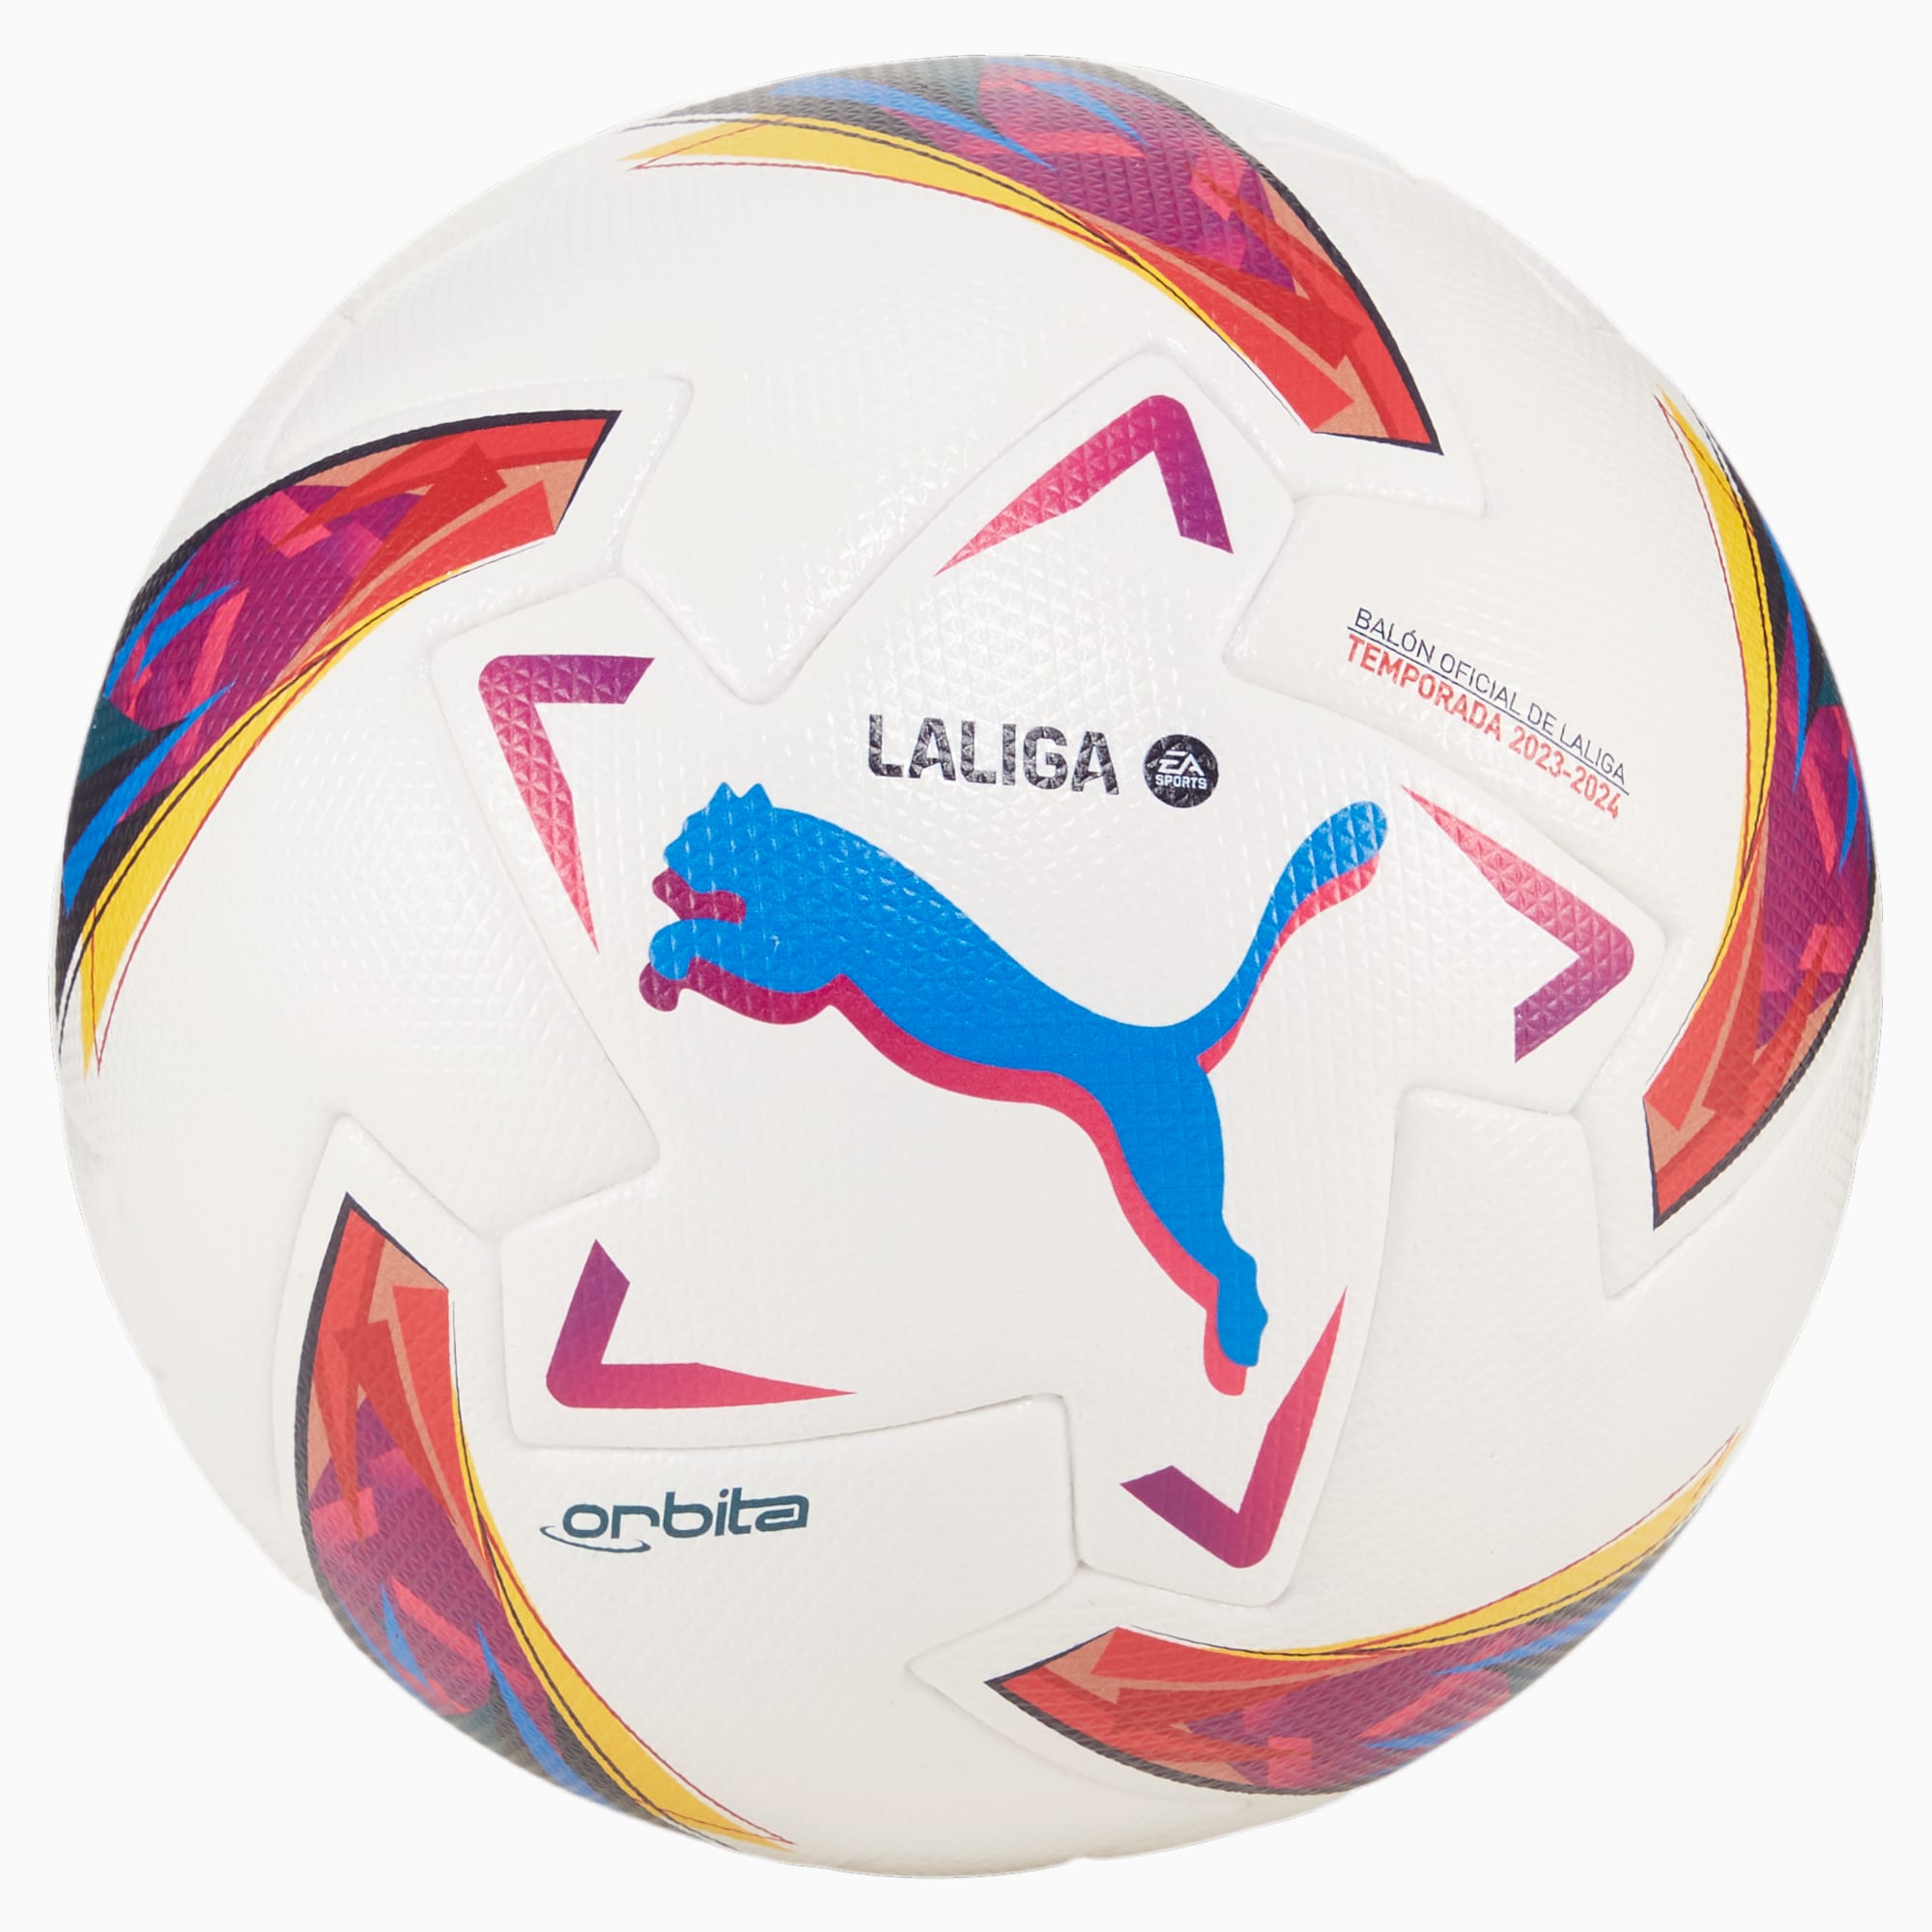 PUMA Ballon De Football La Liga 1 Orbita, Blanc